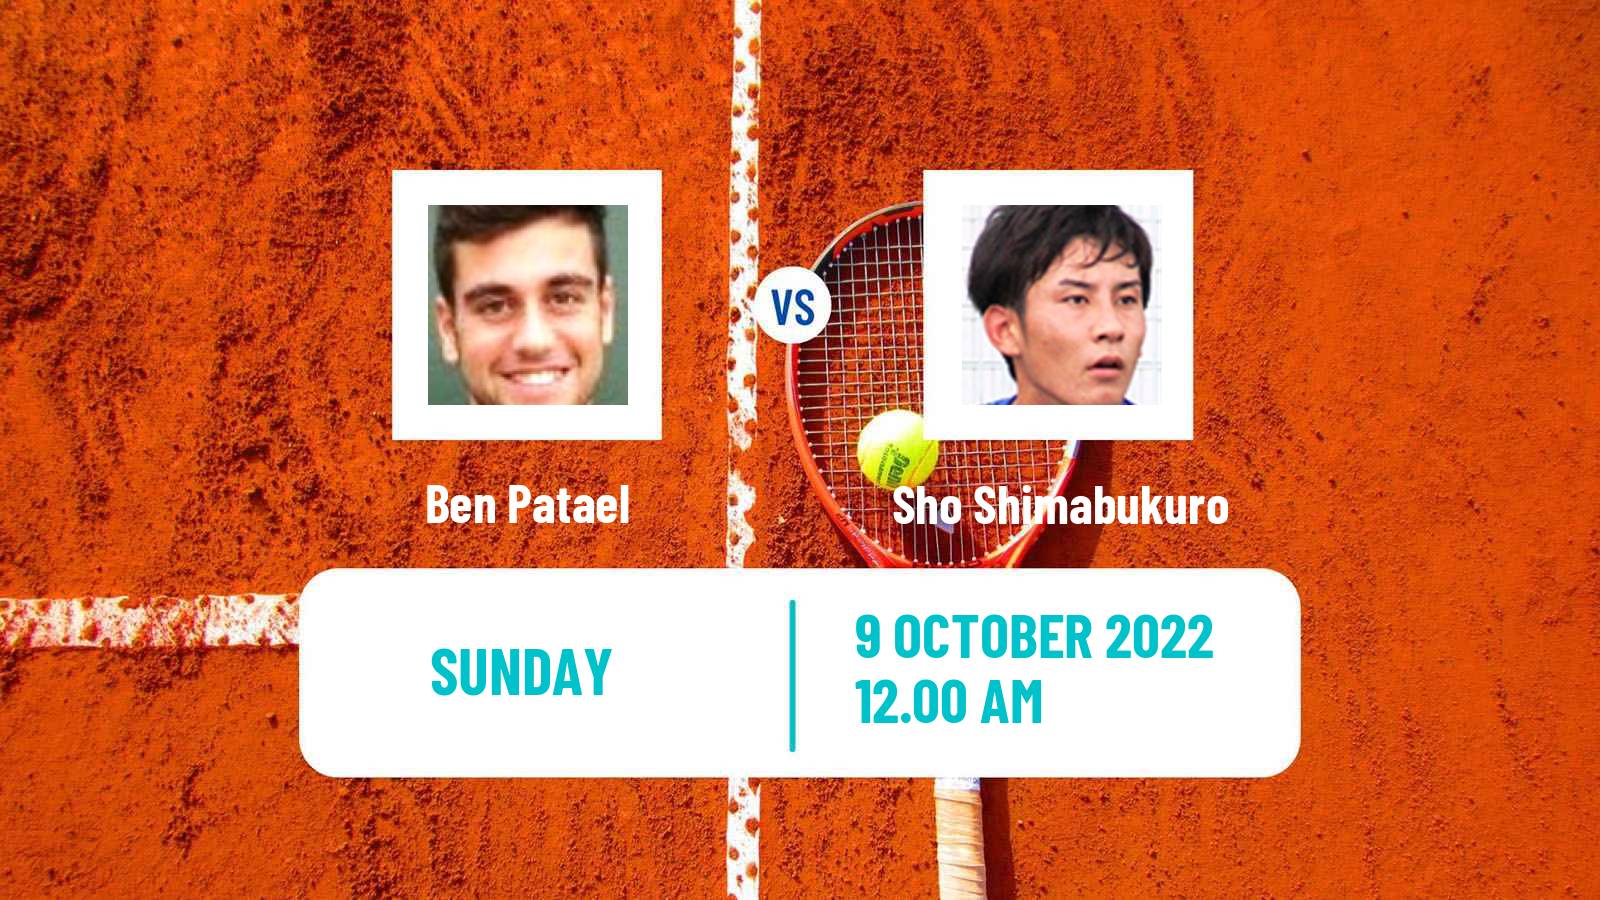 Tennis ATP Challenger Ben Patael - Sho Shimabukuro